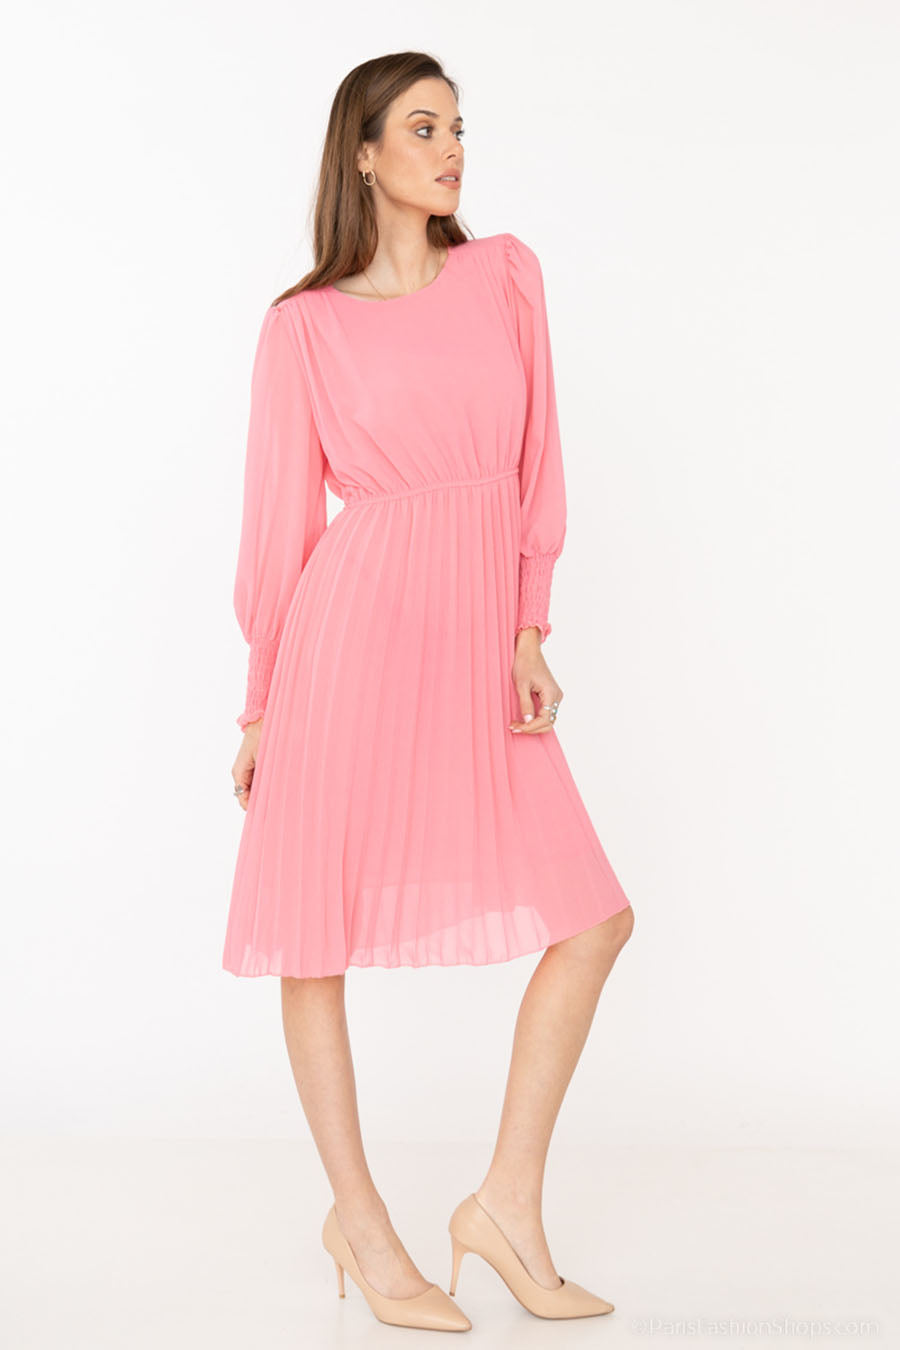 Γυναικείο φόρεμα Jakline, Ροζ 2